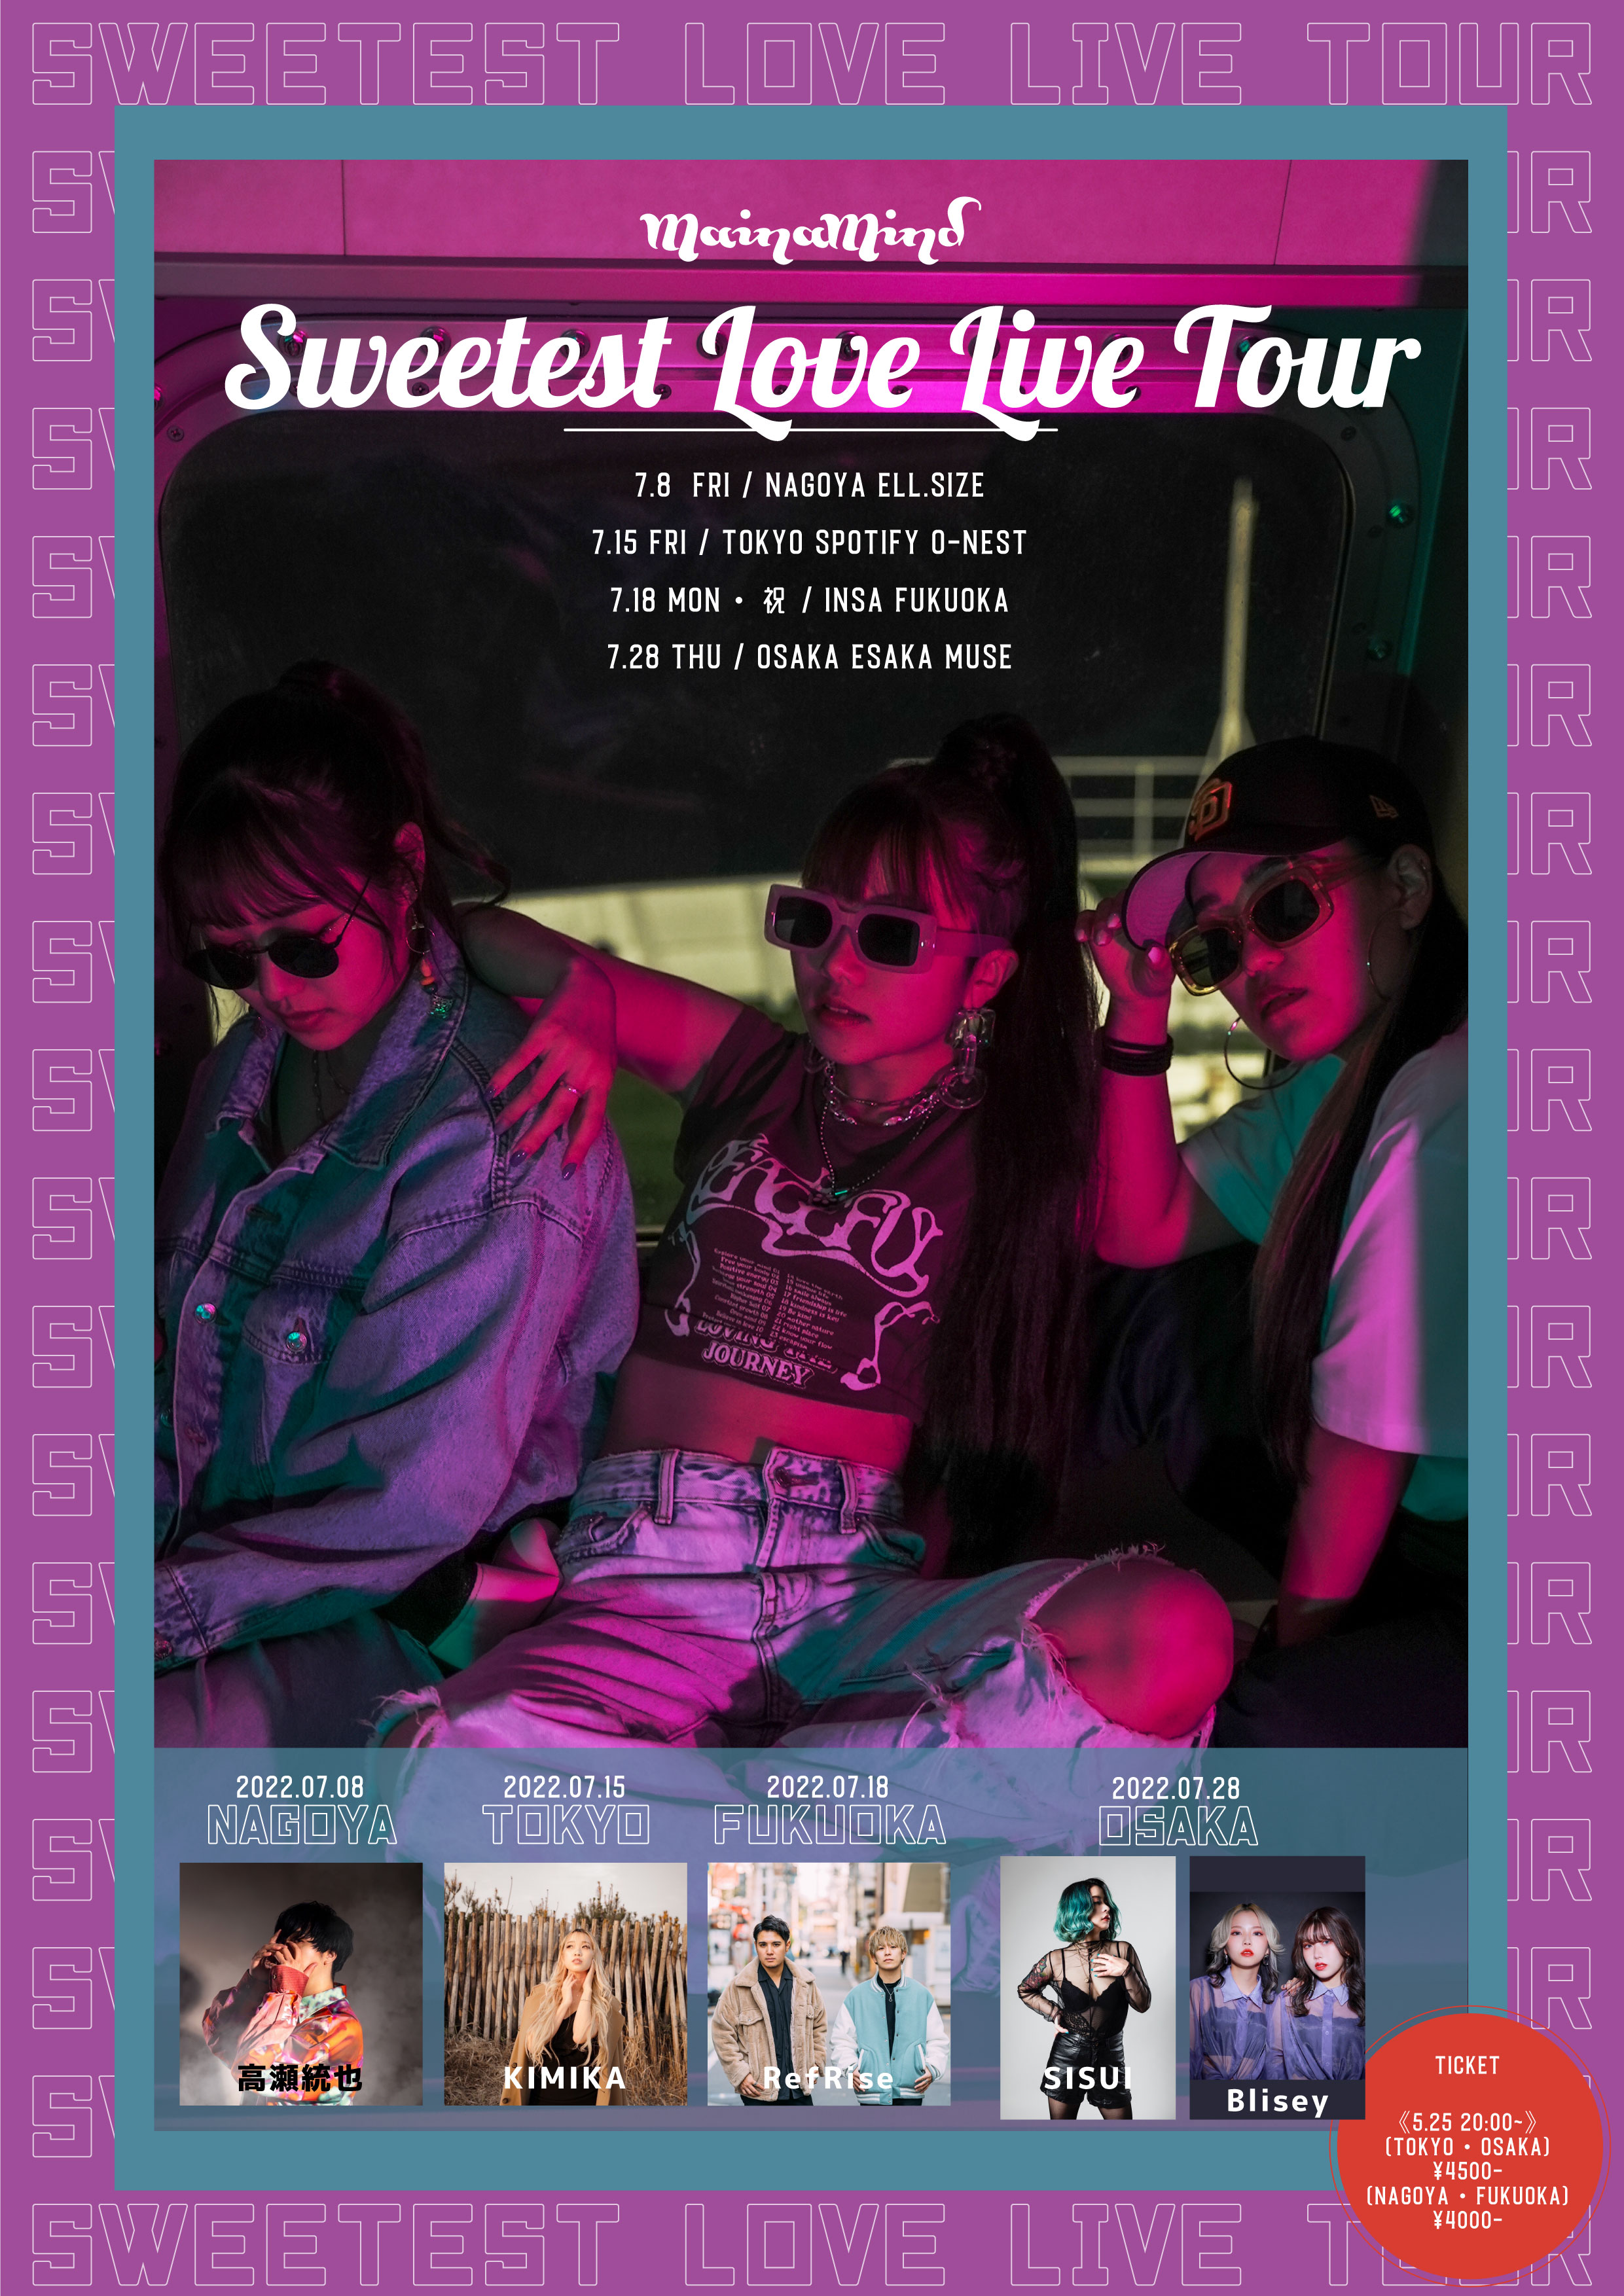 マイナマインド対バンツアー 「MAINAMIND Sweetest Love Live Tour」